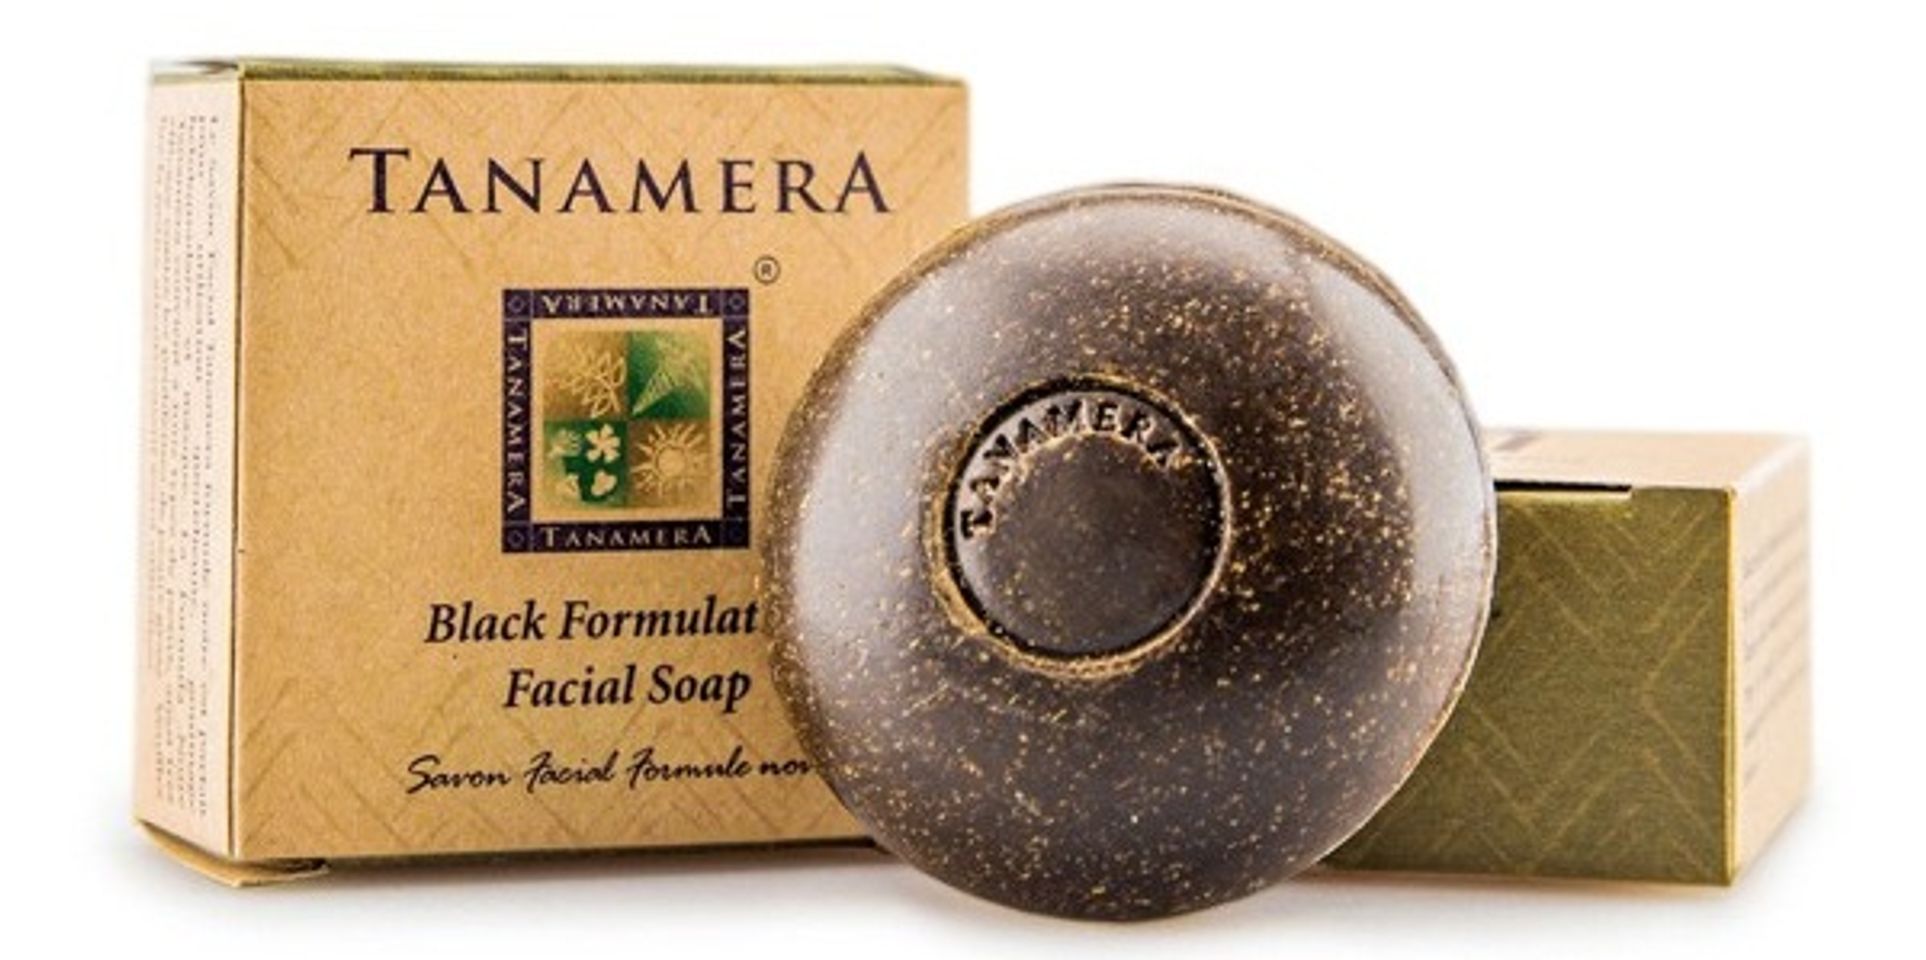 Xà bông rửa mặt Tanamera chứa thành phần tinh chất nghệ đen giúp điều trị mụn